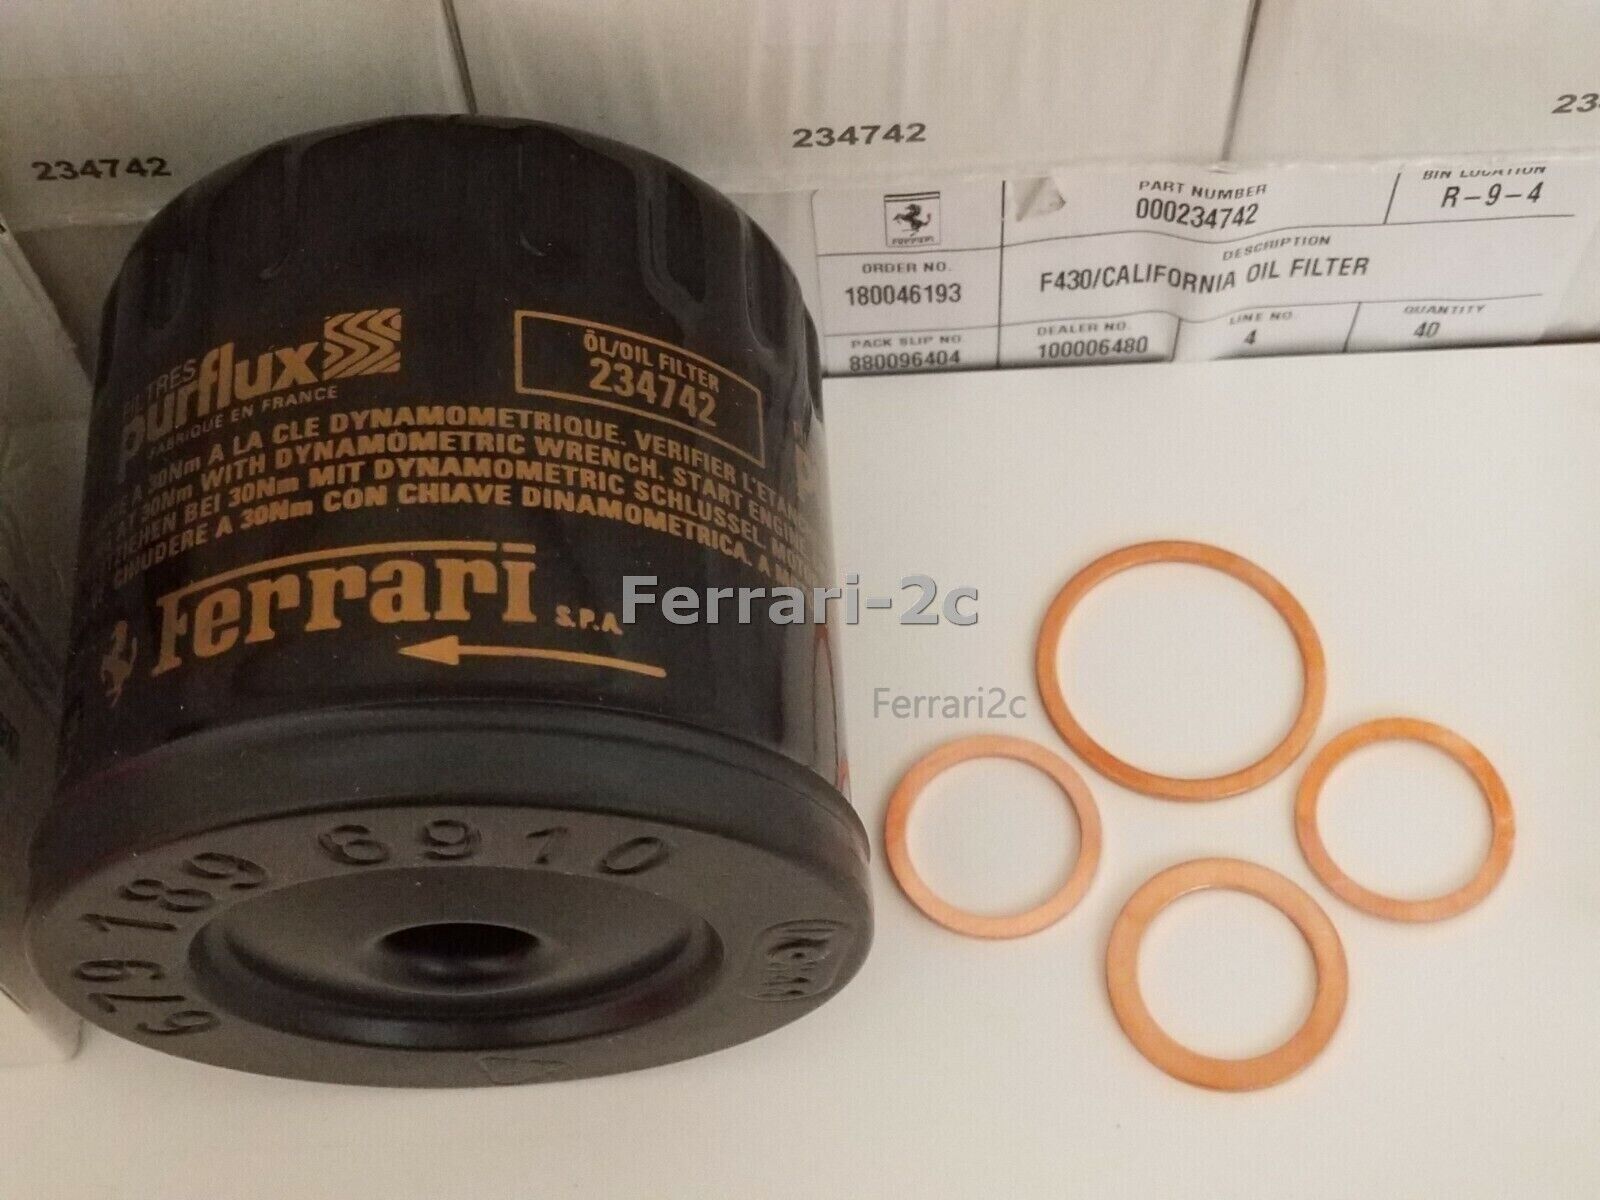 Genuine Ferrari Oil Filter Kit F430 & California 234742 w/ Gaskets Washers F 430